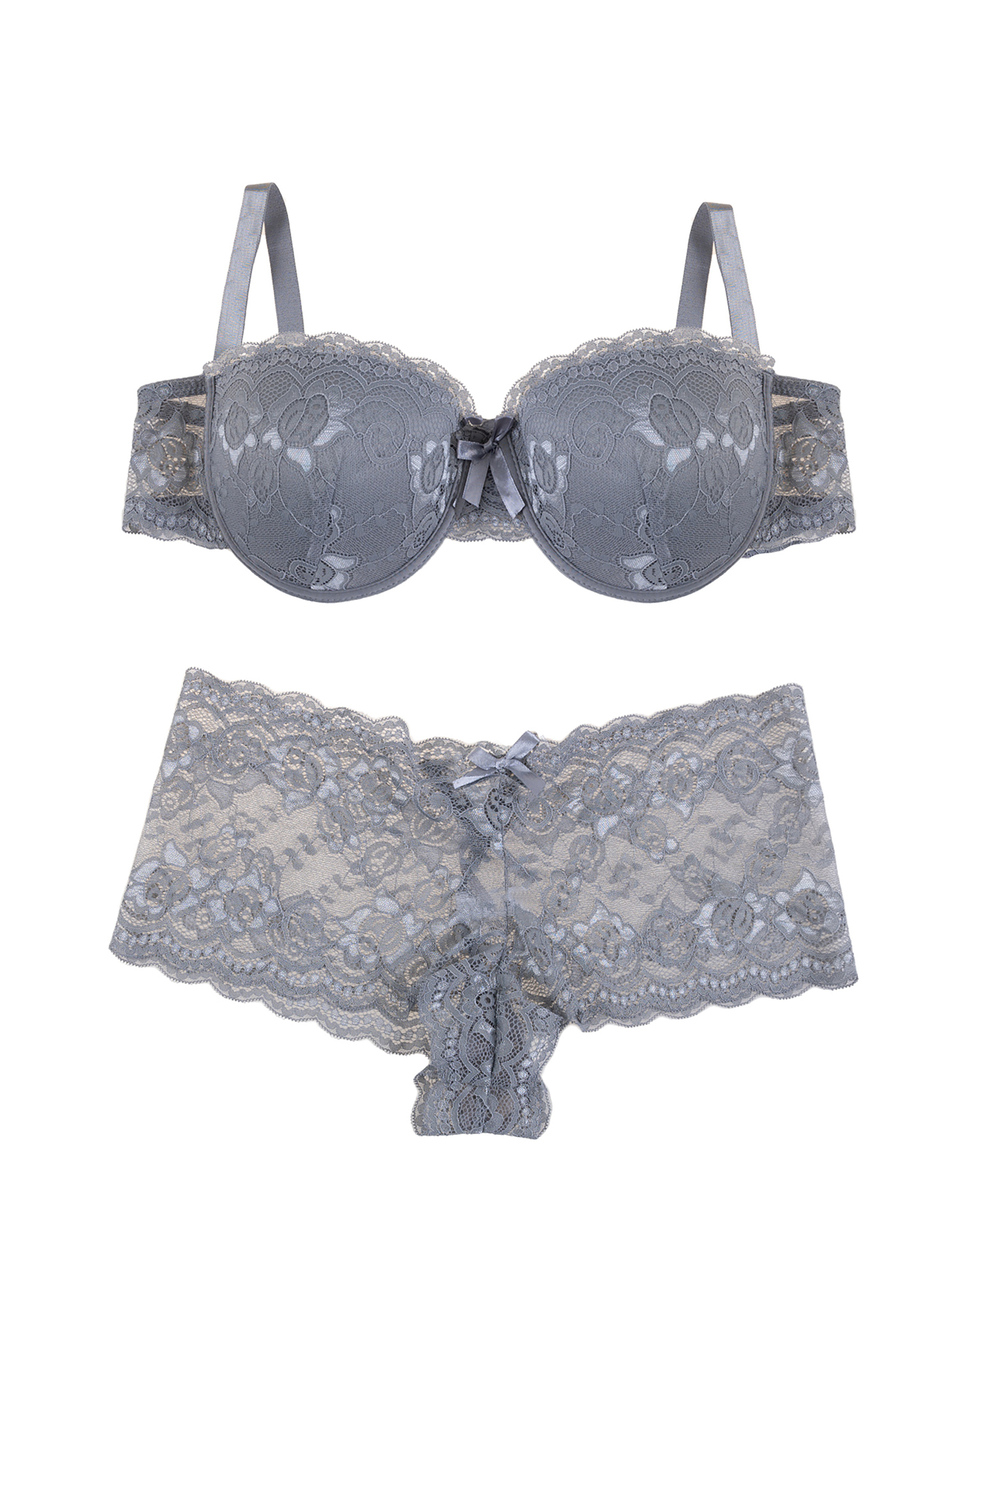 Plunging lace push-up demi bra set, grey - Plus Size. Colour: grey